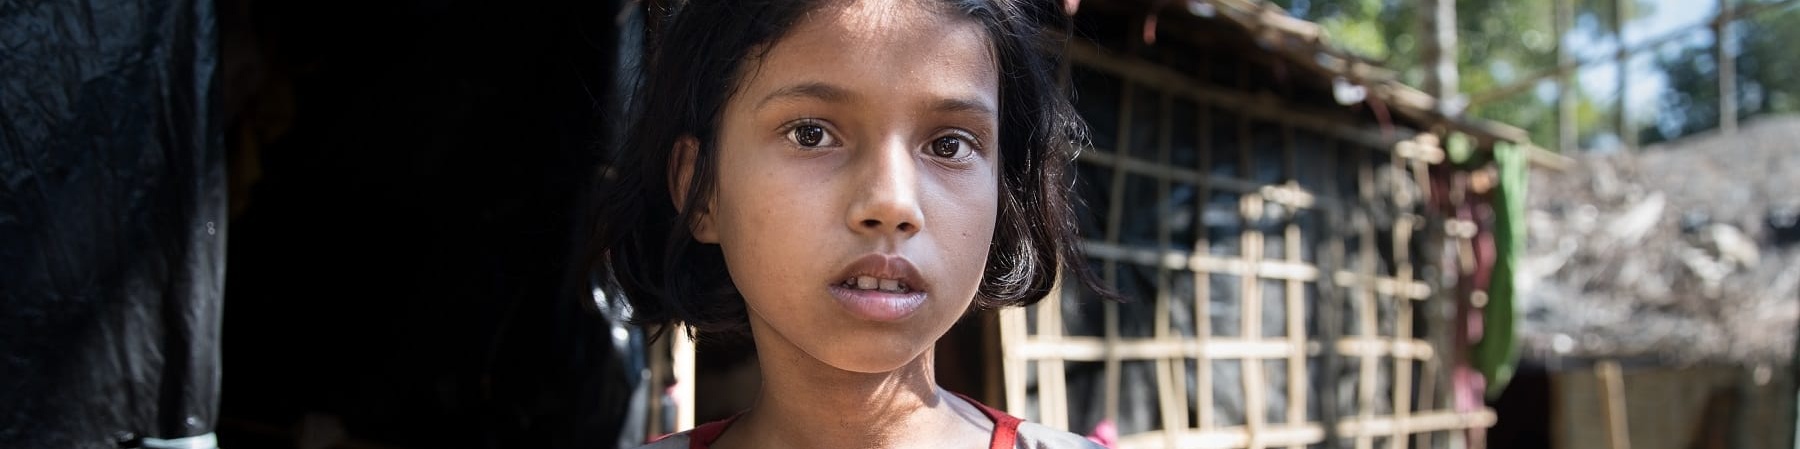 Primo piano di una bambina bengalese mora con capelli corti, la bocca leggermente aperta. Indossa una maglietta grigia con righine rosse.